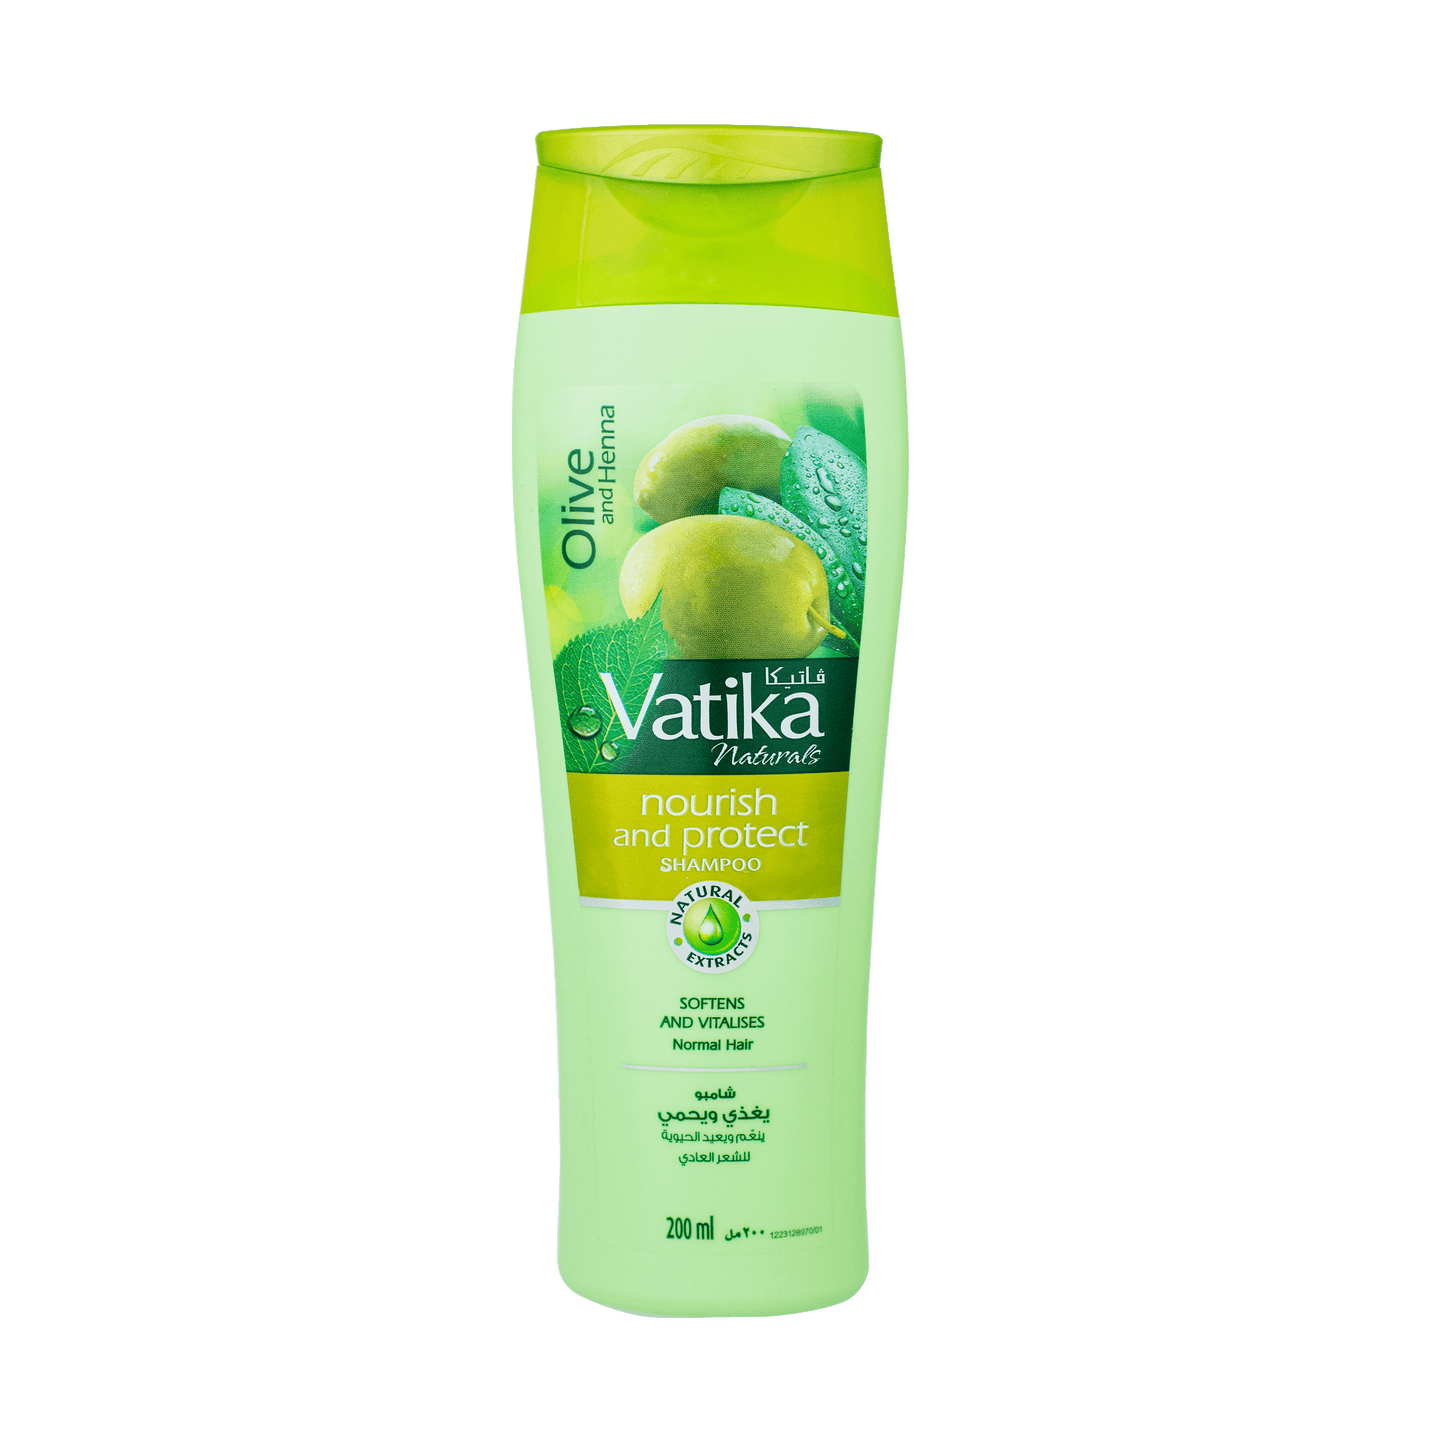 Vatika Nourish & Protect Shampoo - Olive and Henna 200ml